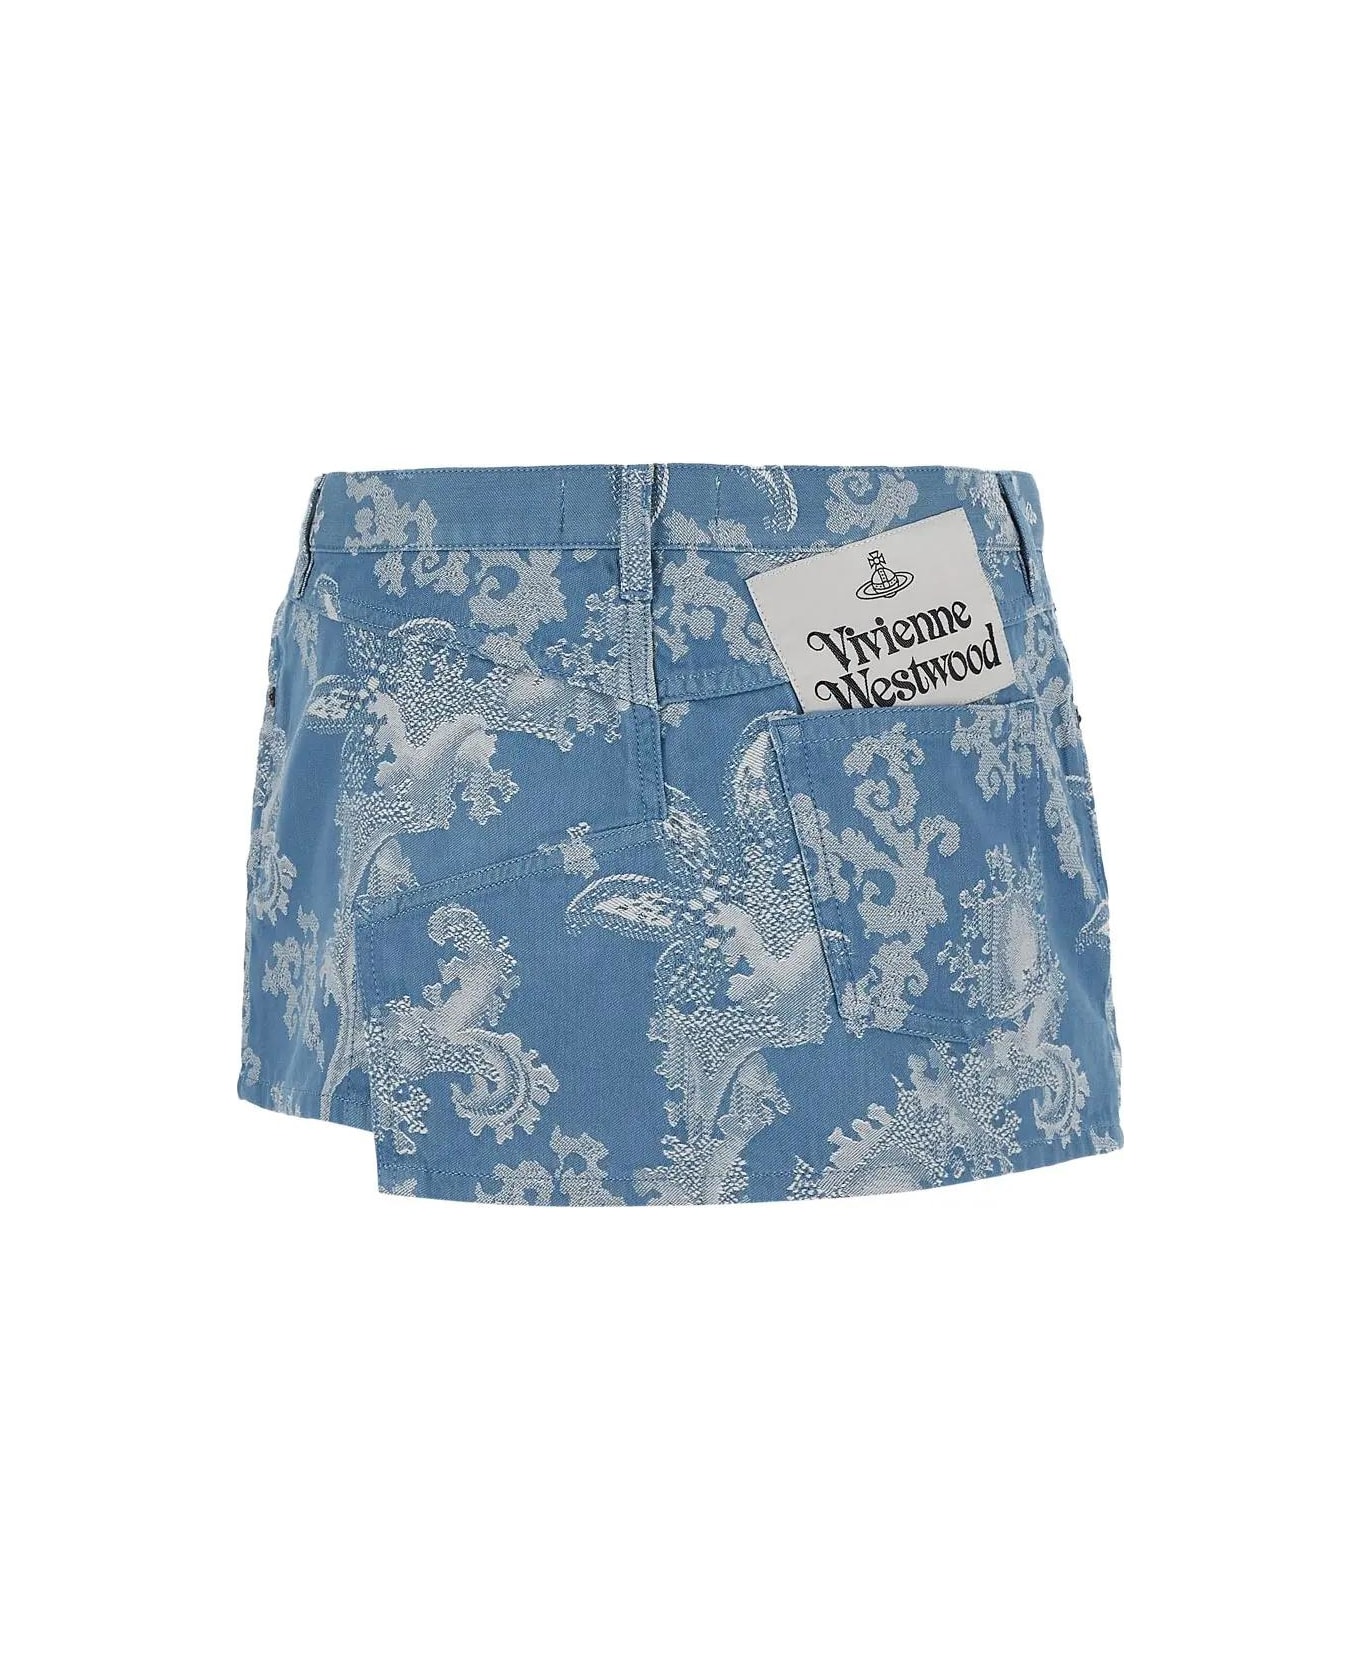 Vivienne Westwood Foam Skirt - Blue coral